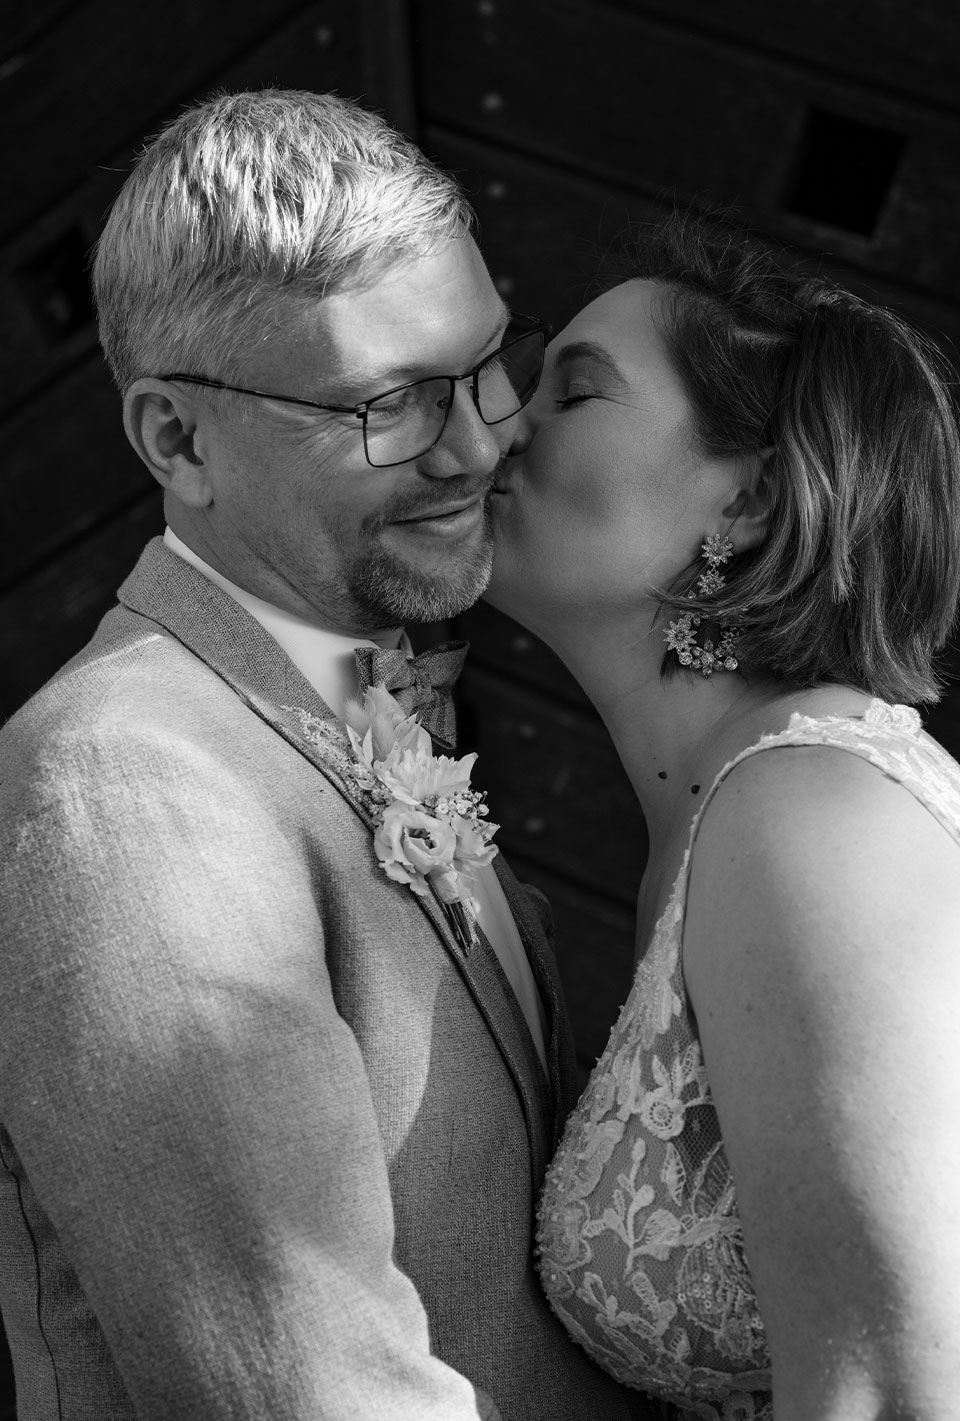 Schwarz-Weiß-Foto eines Brautpaares; die Braut küsst den Bräutigam liebevoll auf die Wange.